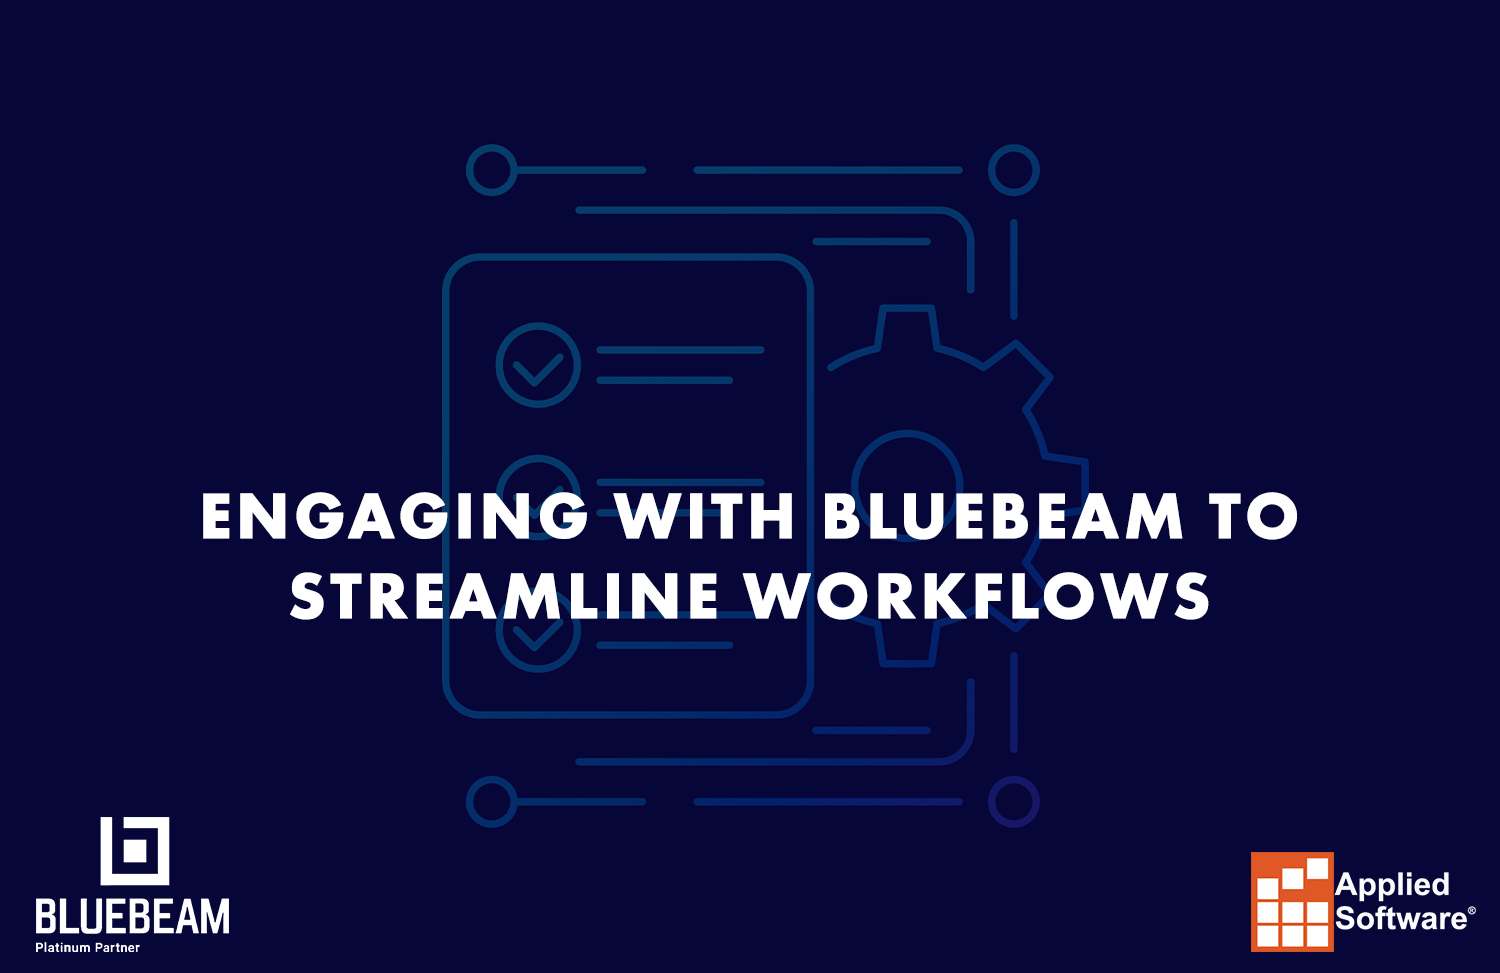 与Bluebeam简化工作流